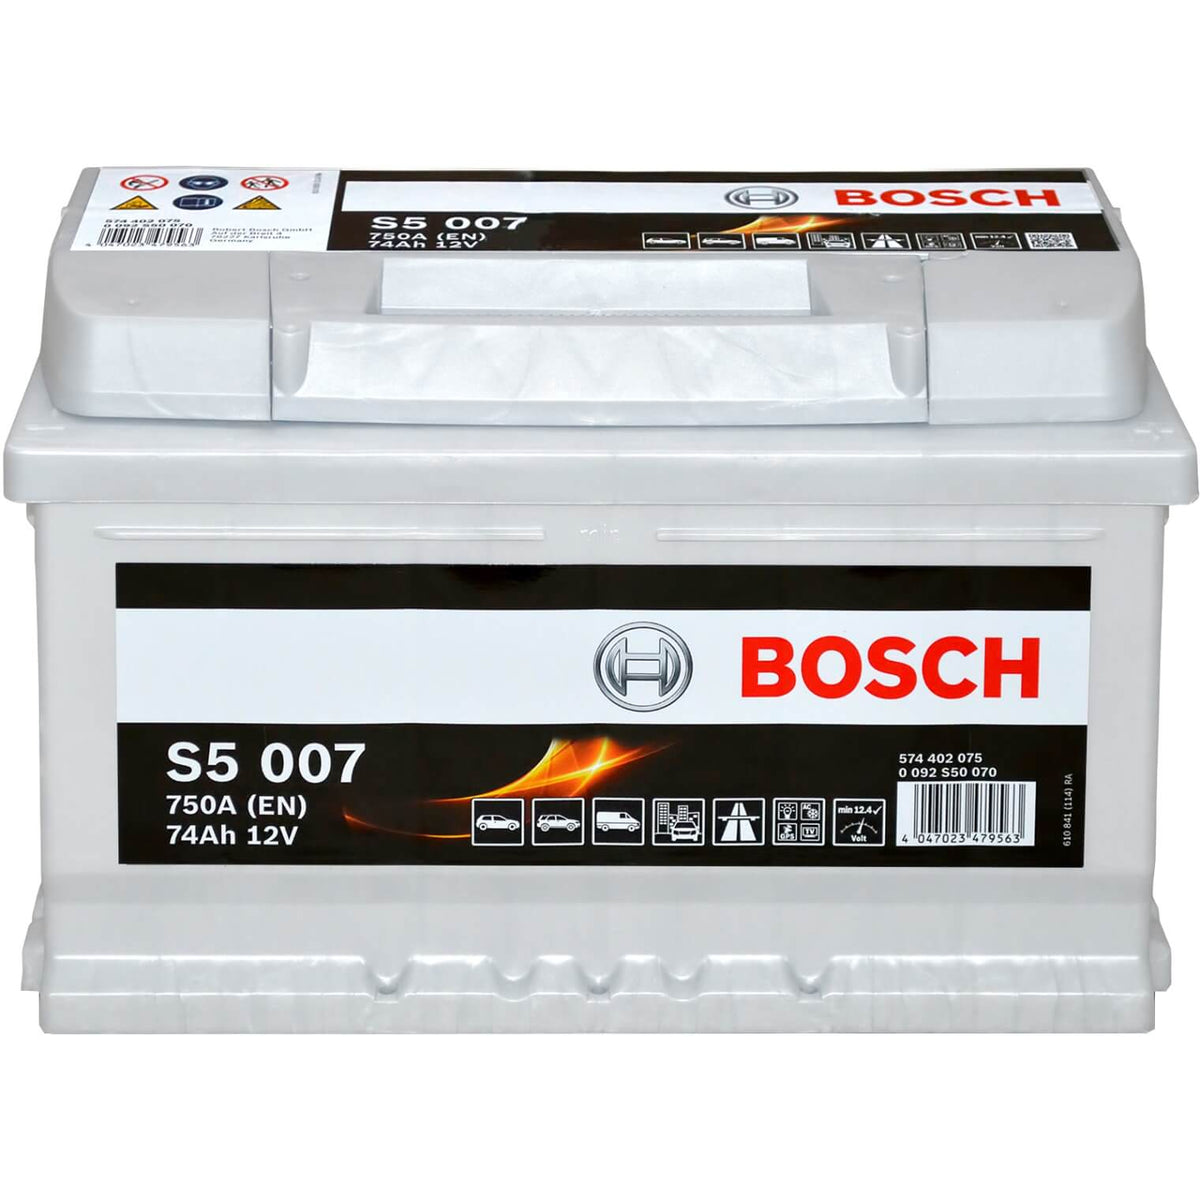 Bosch S5007 12V 74Ah 750A/EN